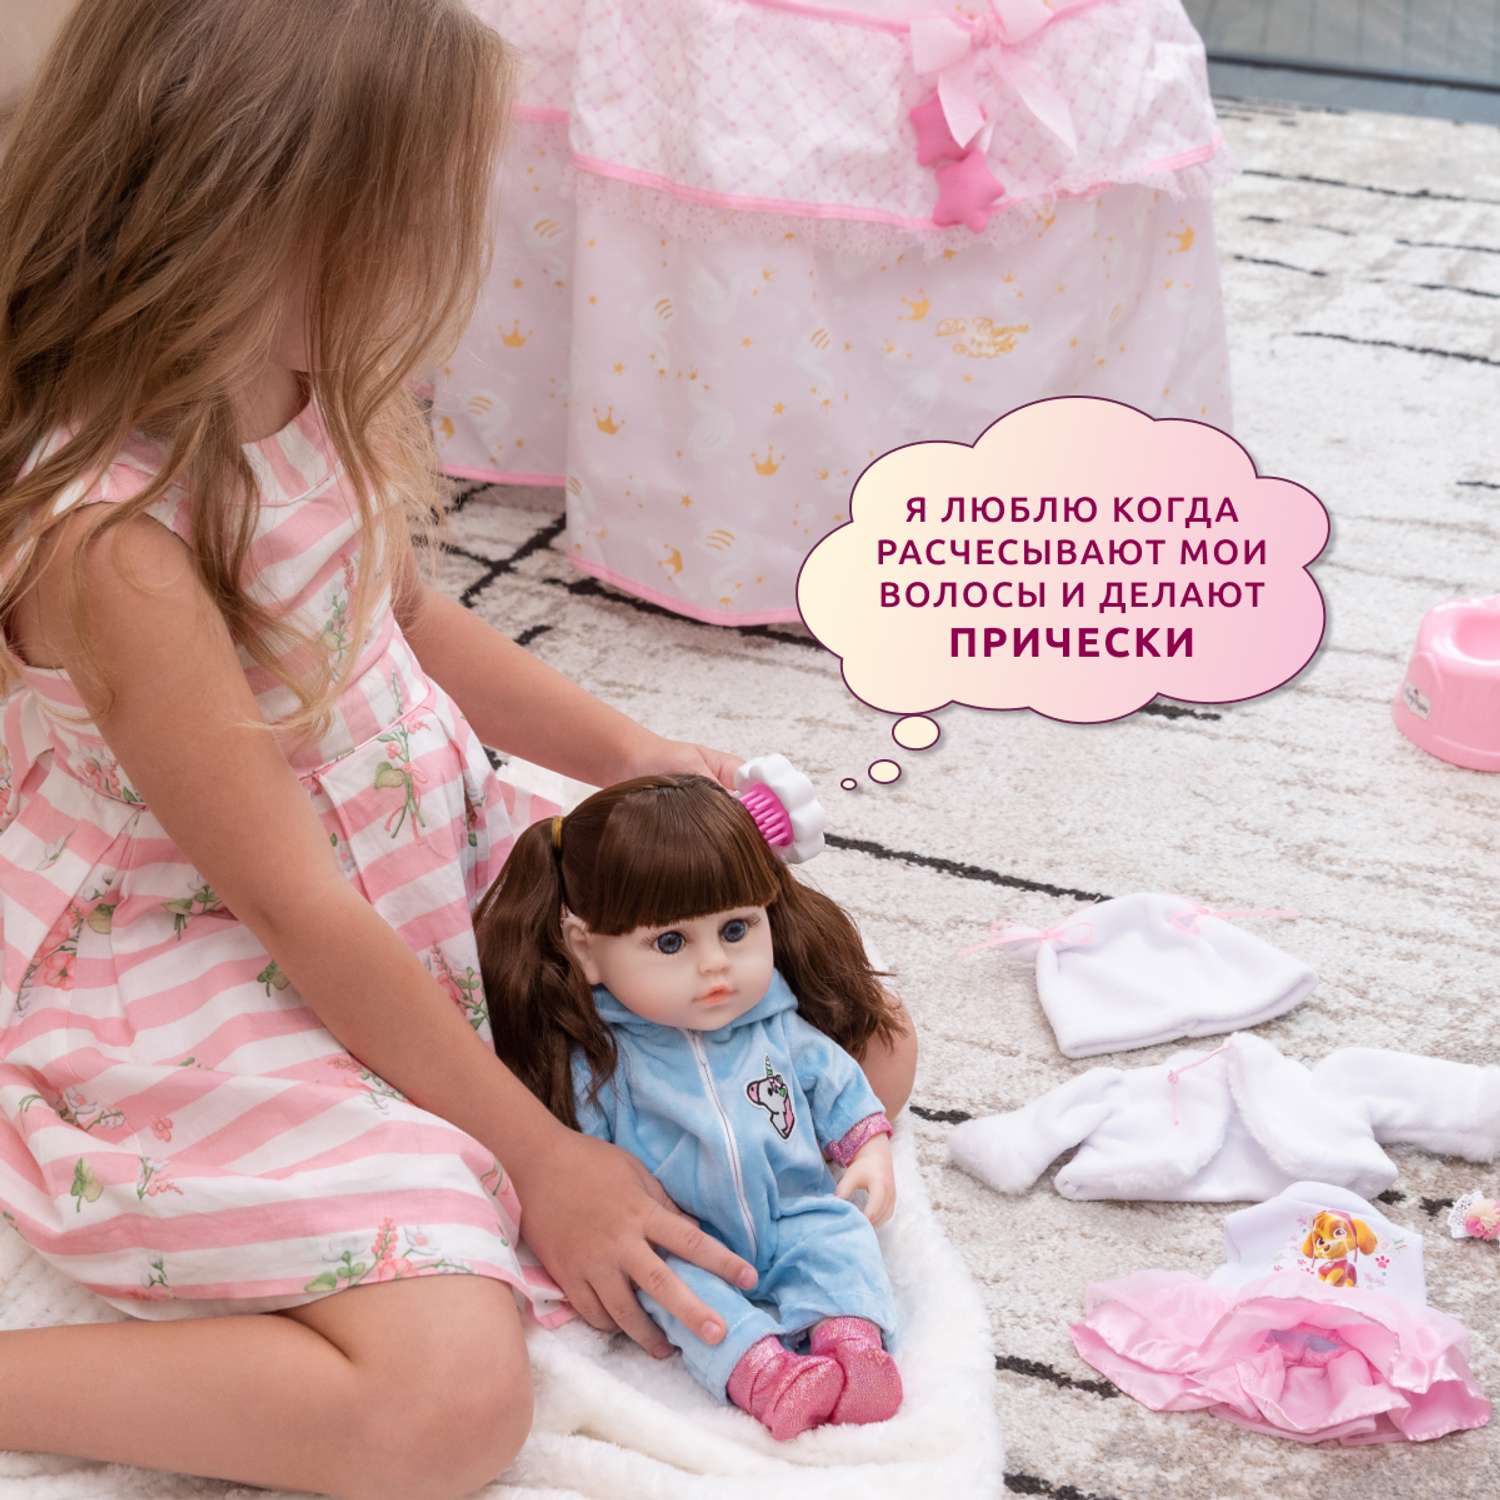 Кукла Реборн QA BABY Марта девочка интерактивная Пупс набор игрушки для ванной для девочки 38 см 3806 - фото 6